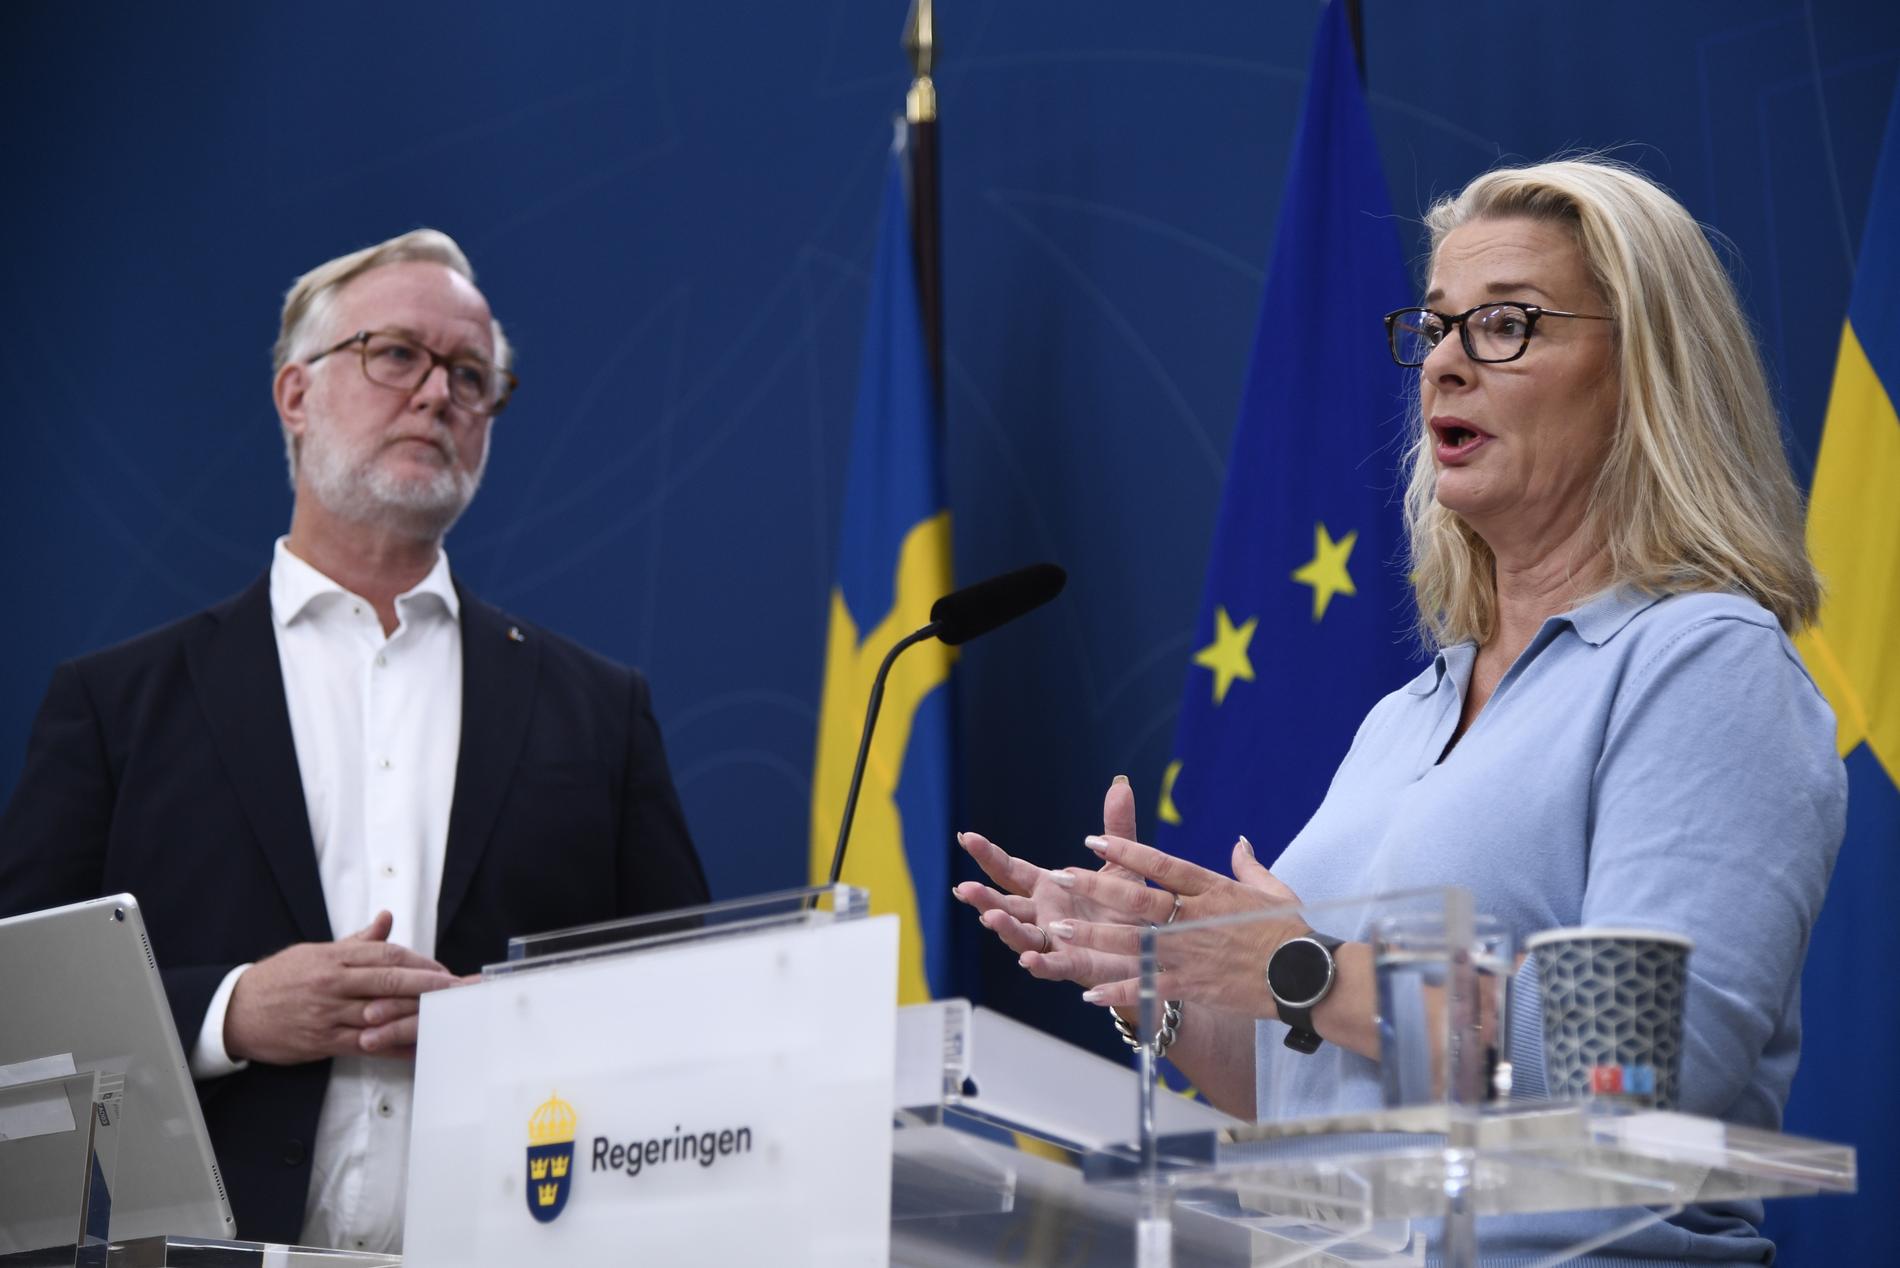 Arbetsmarknadsminister Johan Pehrson och skolminister Lotta Edholm.